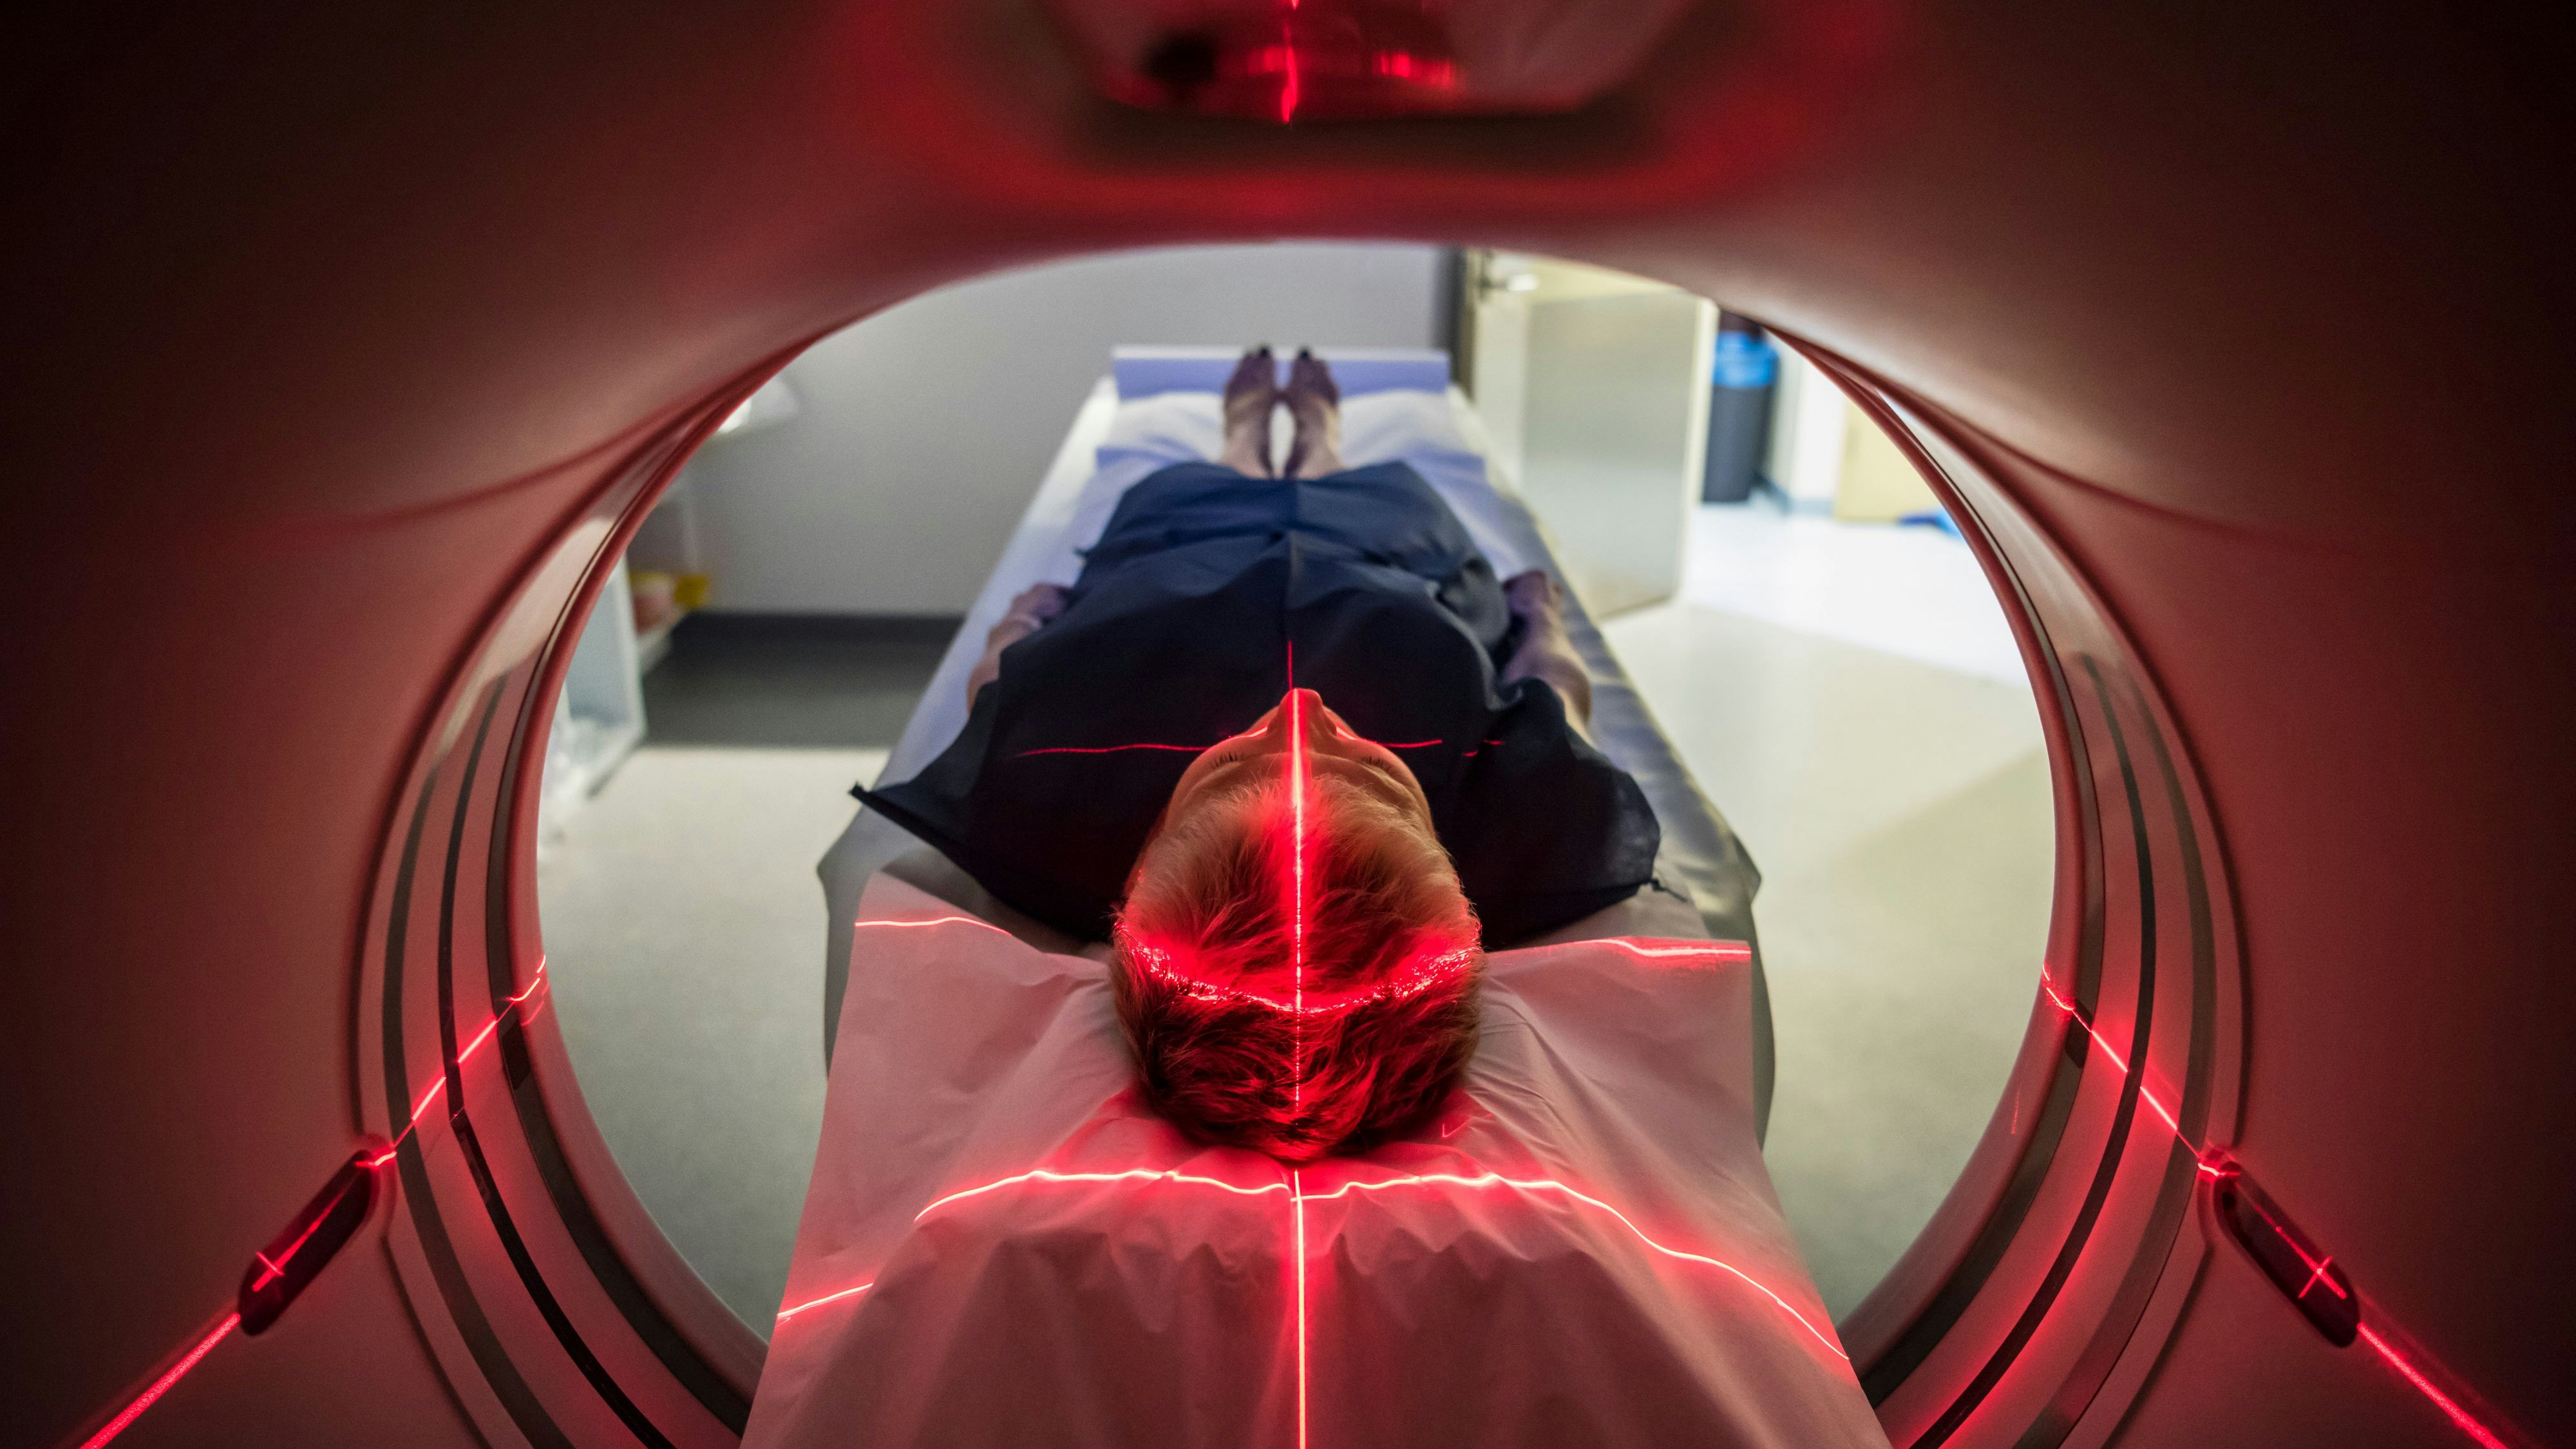 Patient in der "Röhre" bei einer MRT-Untersuchung